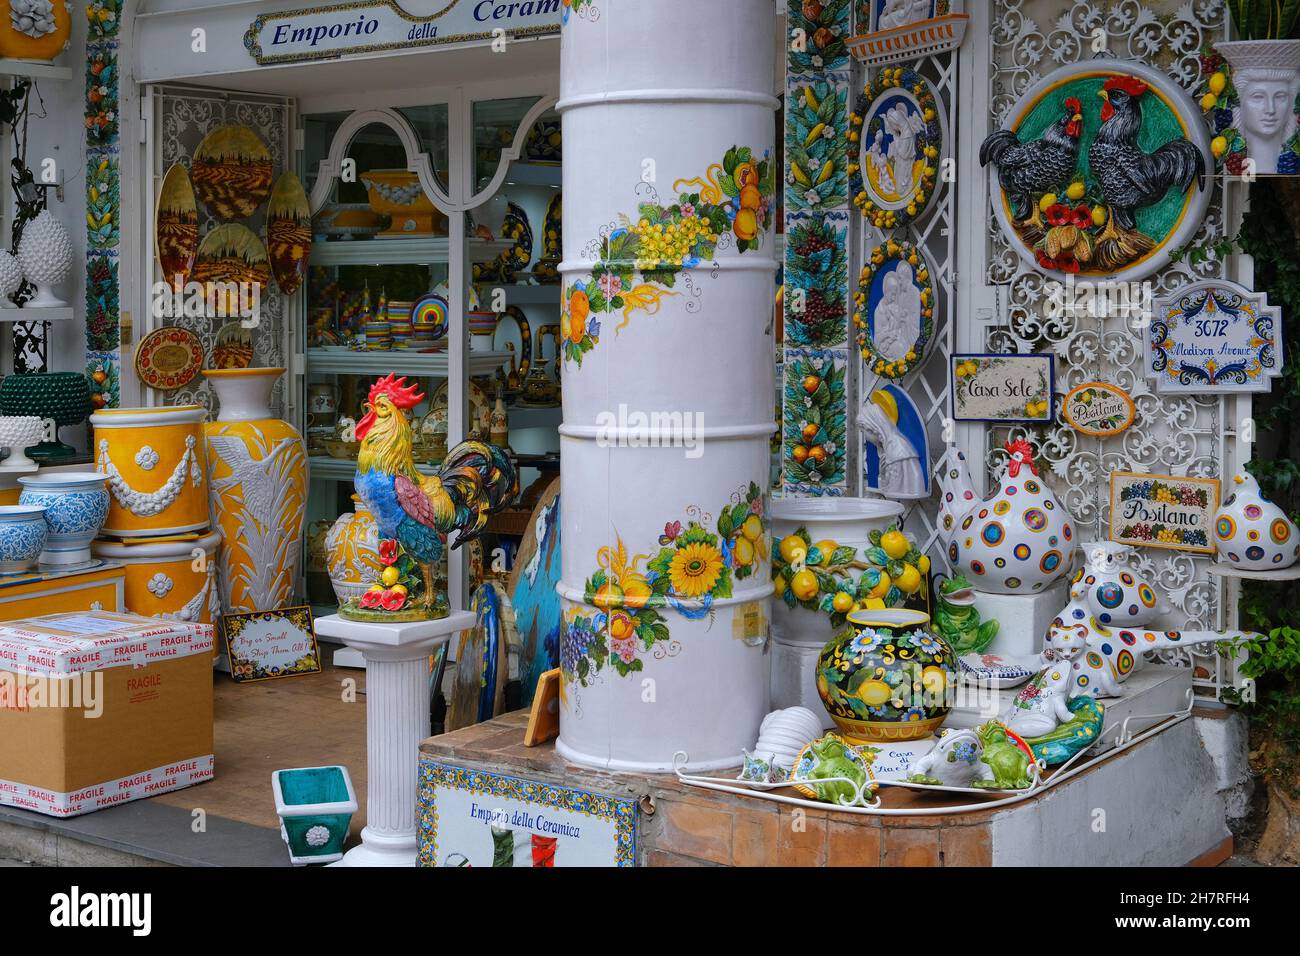 Positano, côte amalfitaine, Italie - novembre 5 2021.Rues et boutique de céramique animée dans la station de Positano sur la côte amalfitaine, province de Salerne Banque D'Images